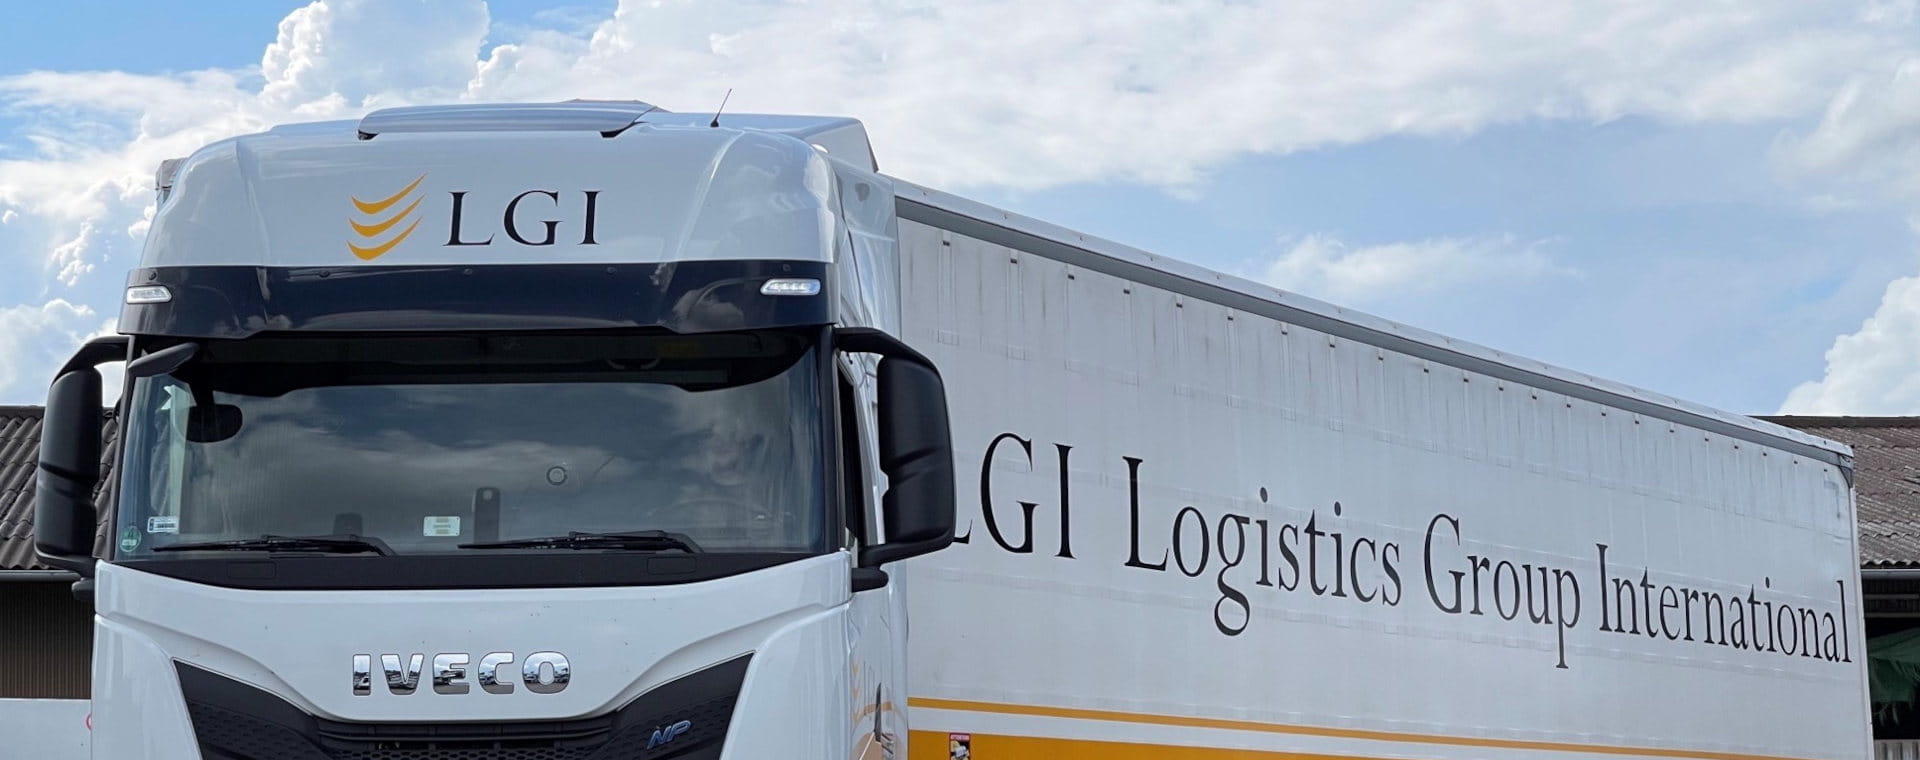 LNG Truck LGI Logistics